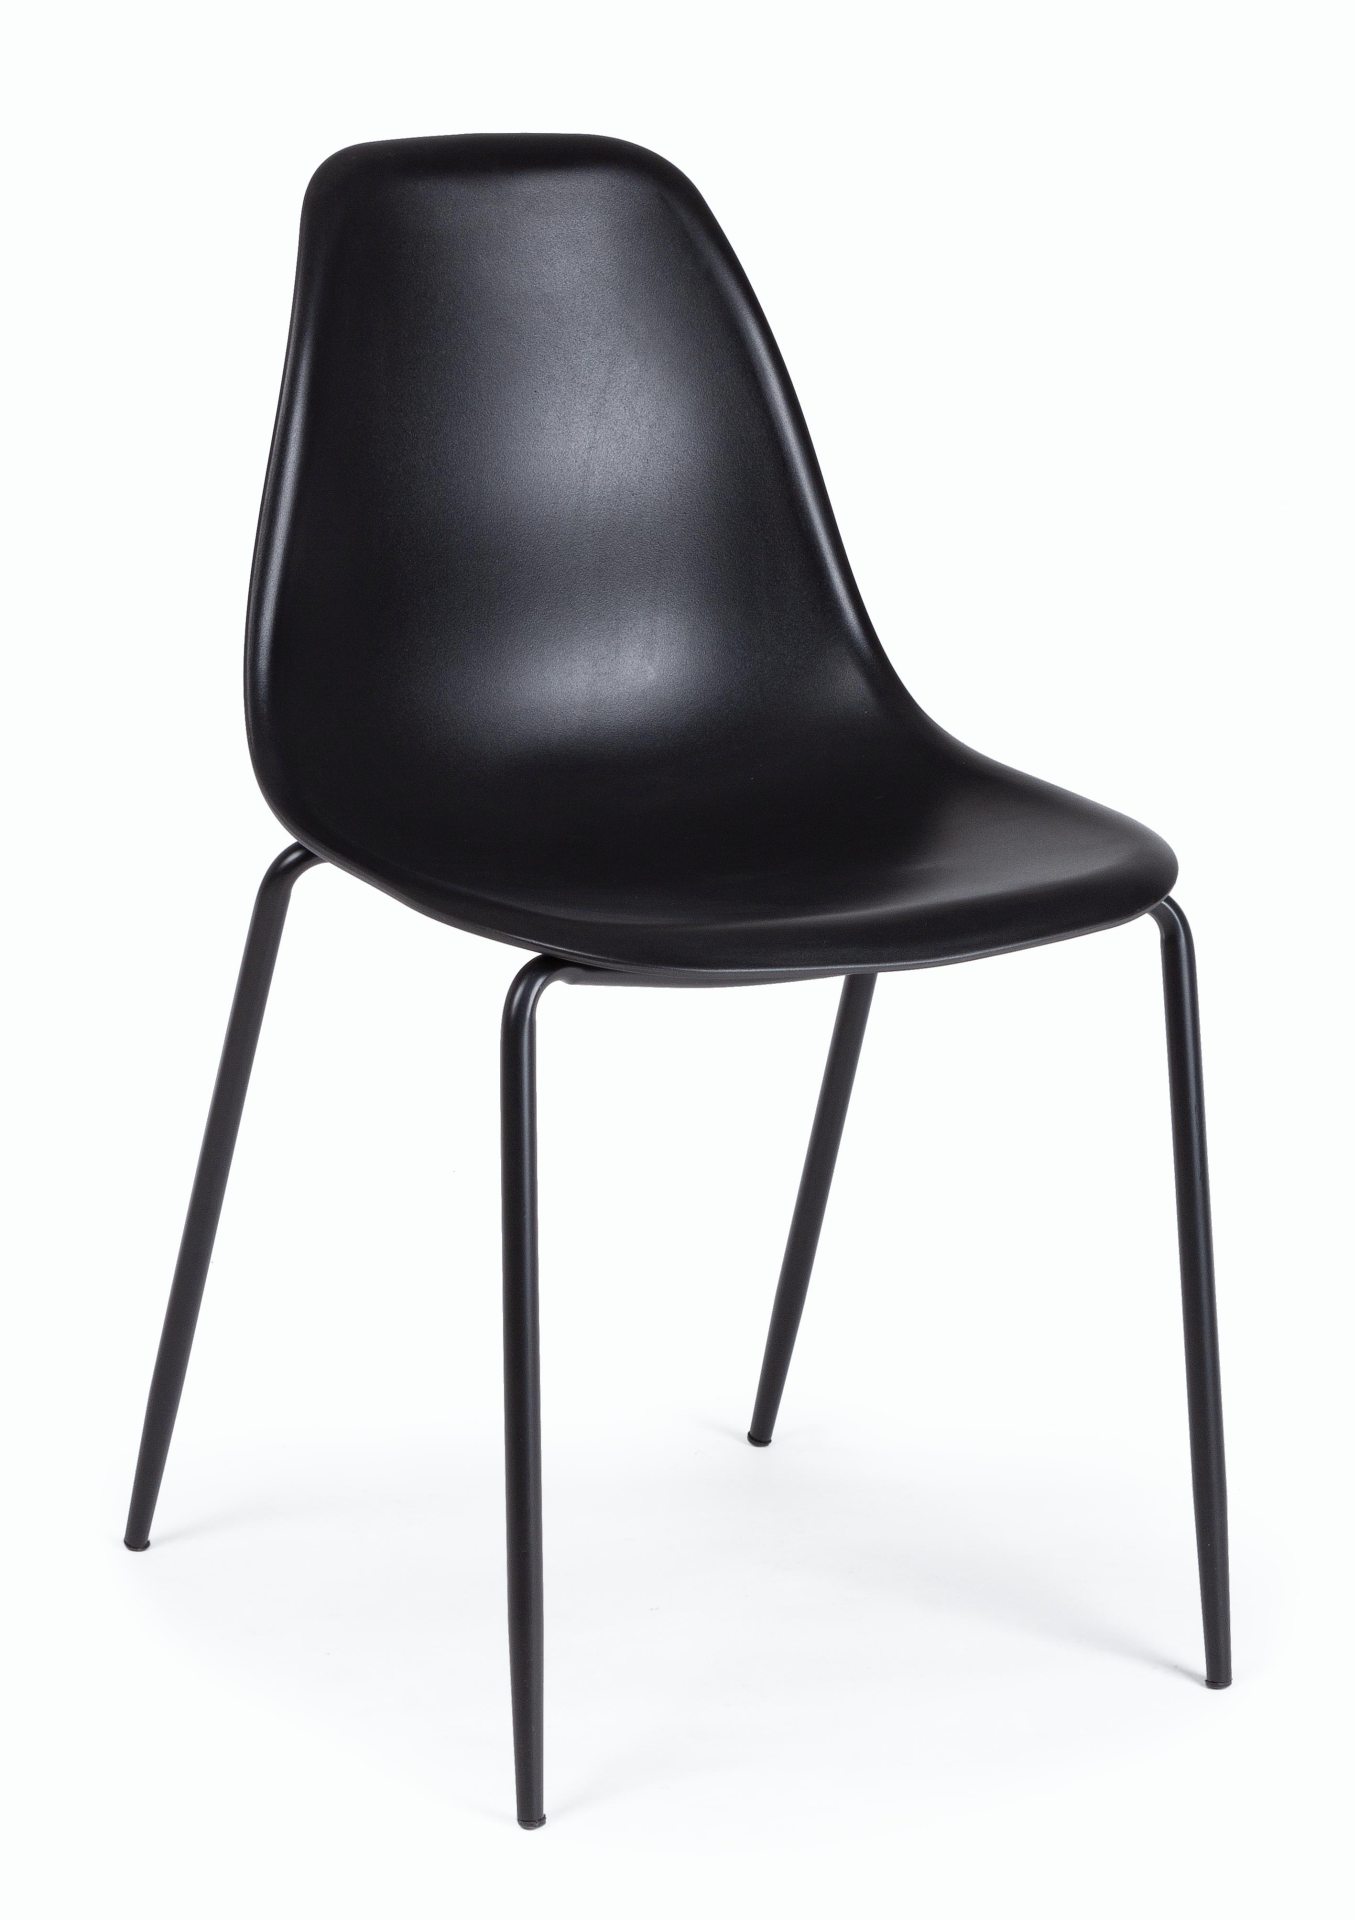 Der Stuhl Iris überzeugt mit seinem modernem Design. Gefertigt wurde der Stuhl aus Kunststoff, welcher einen schwarzen Farbton besitzt. Das Gestell ist aus Stahl, welches einen schwarzen Farbton besitzt. Die Sitzhöhe beträgt 47 cm.